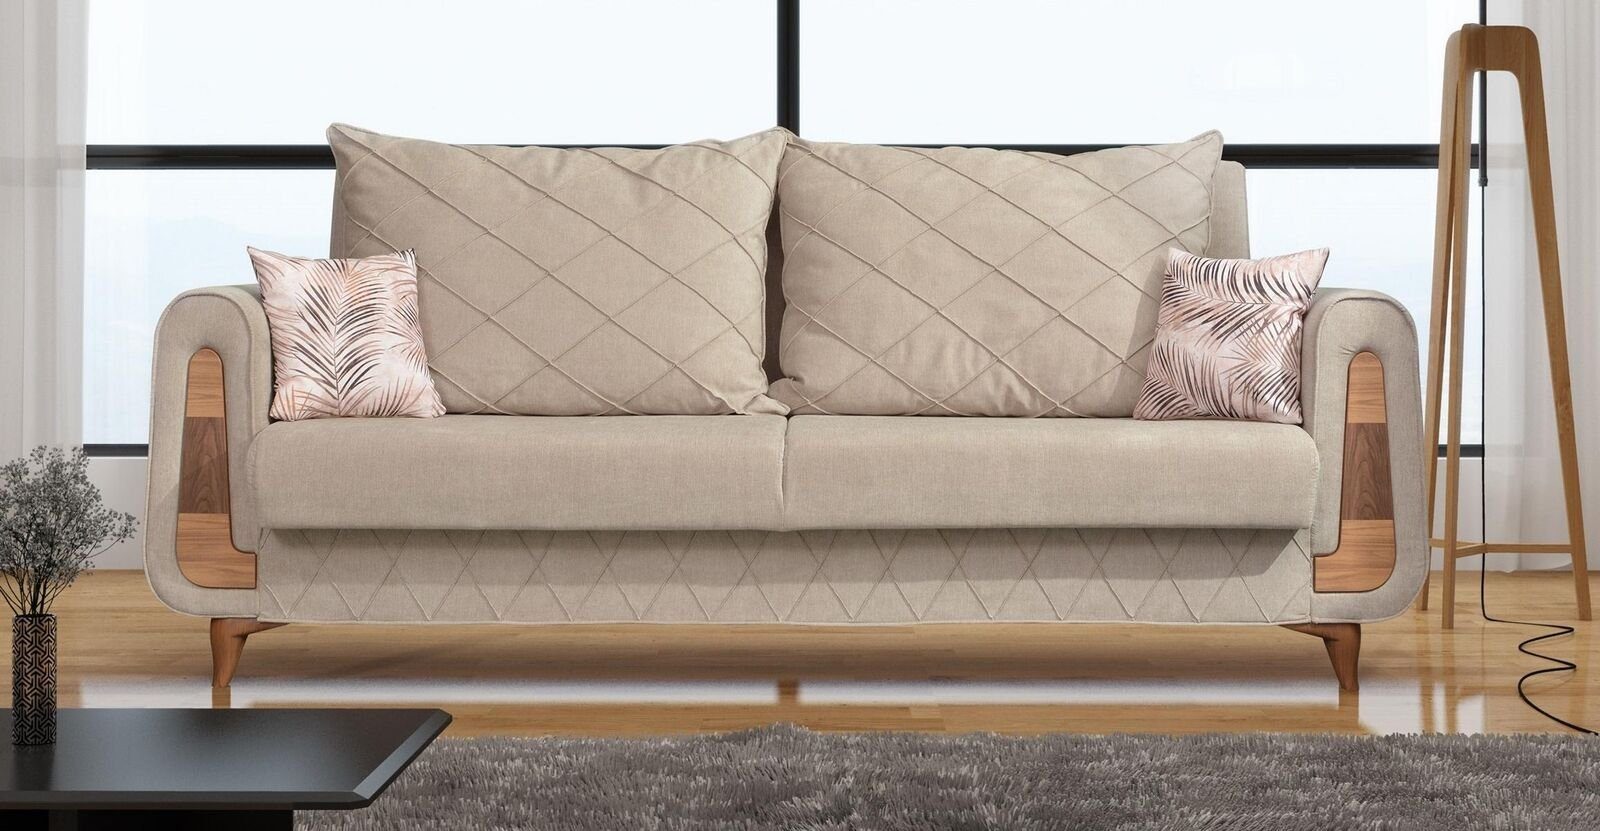 JVmoebel Sofa, Designer Moderne Sofa 3 Sitzer Möbel Textil Beige Couchen xxl Neu